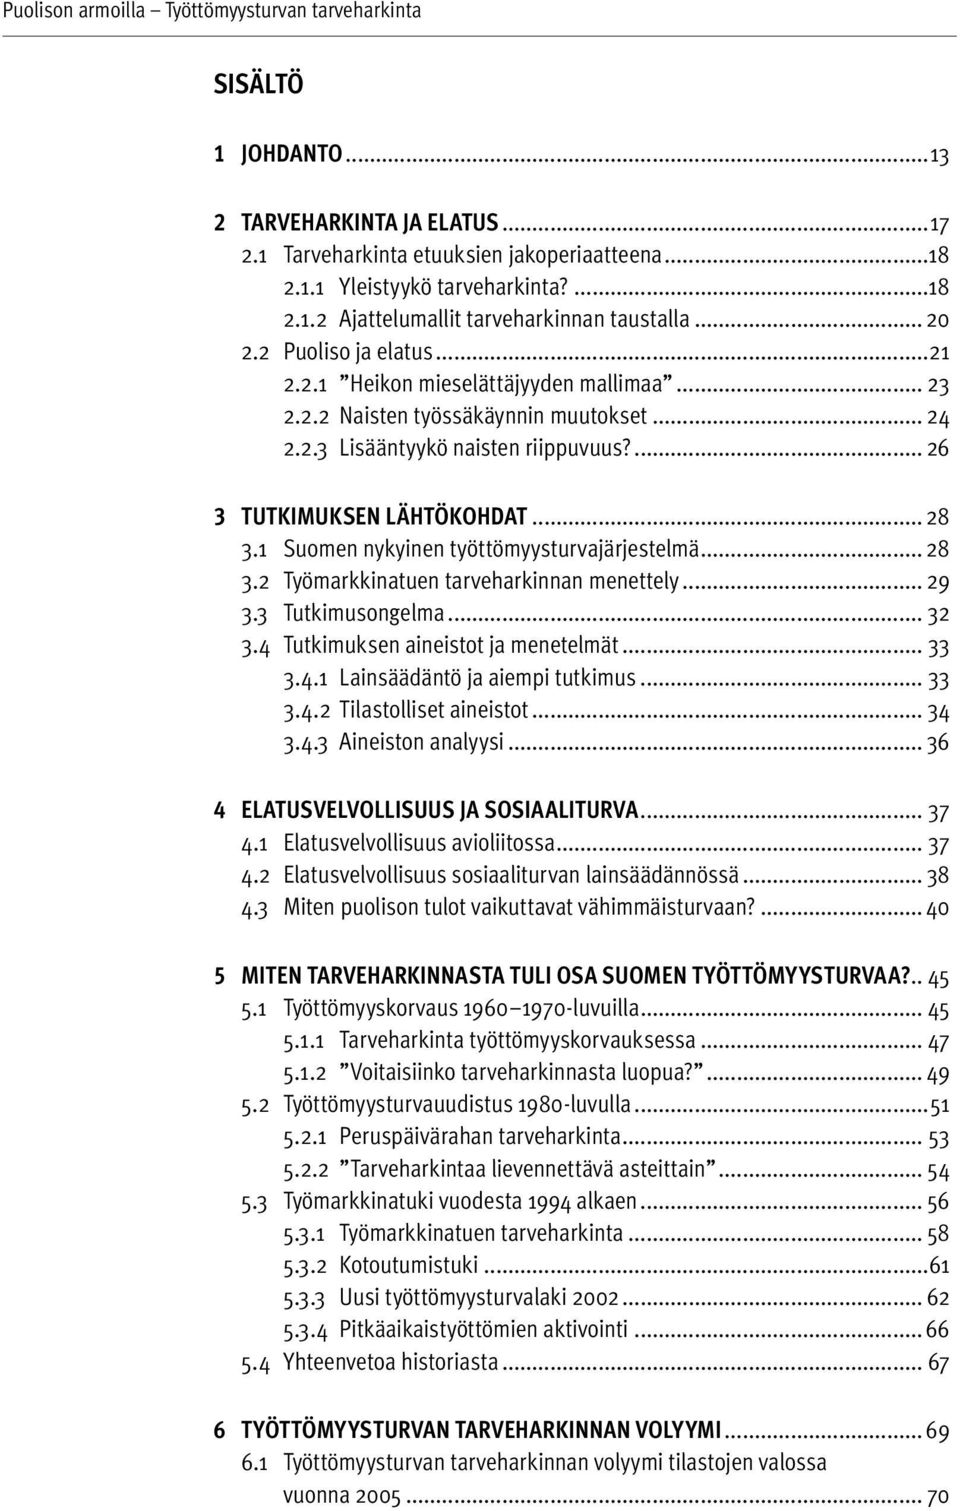 1 Suomen nykyinen työttömyysturvajärjestelmä... 28 3.2 Työmarkkinatuen tarveharkinnan menettely... 29 3.3 Tutkimusongelma... 32 3.4 Tutkimuksen aineistot ja menetelmät... 33 3.4.1 Lainsäädäntö ja aiempi tutkimus.